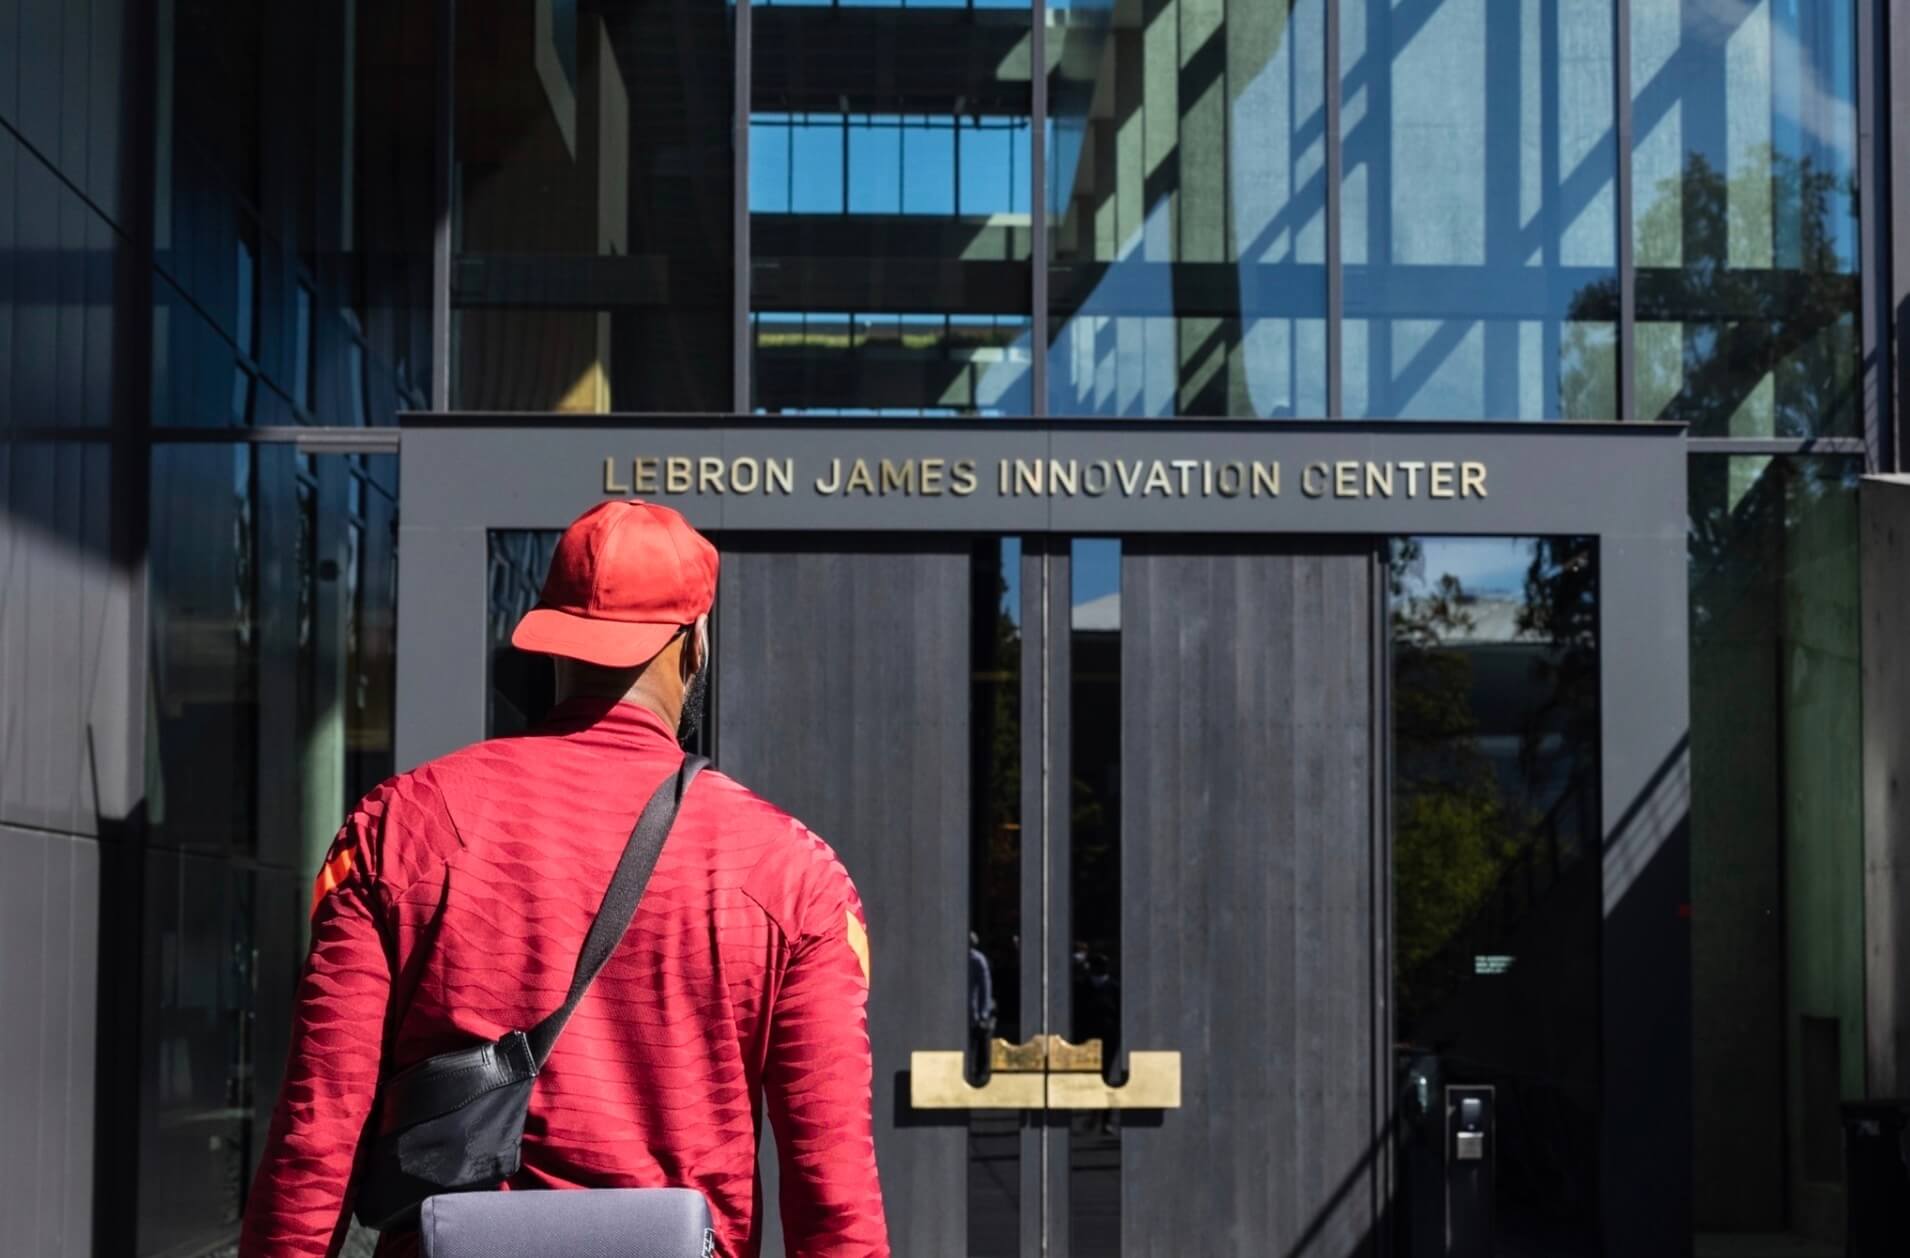 lebron james enters a building named after him